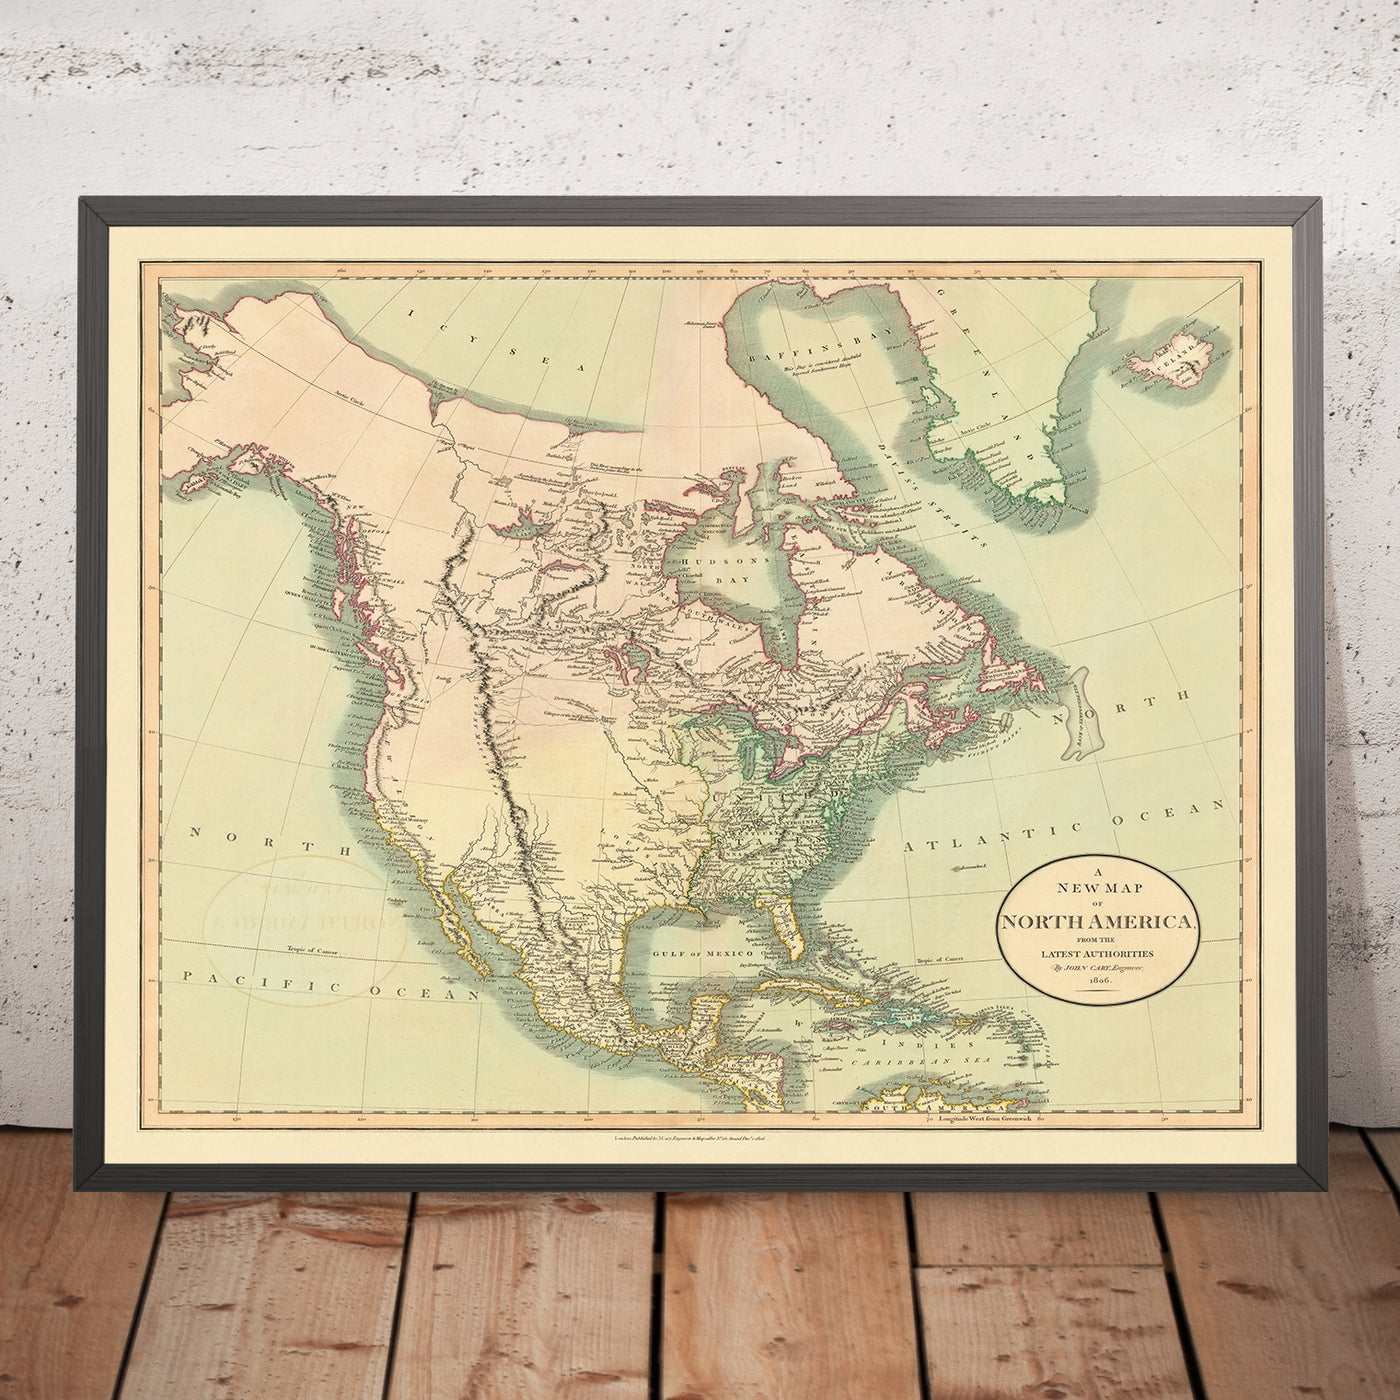 Ancienne carte de l'Amérique du Nord par Cary, 1806 : achat de la Louisiane, montagnes Rocheuses, océan Arctique, baie d'Hudson, passage du Nord-Ouest